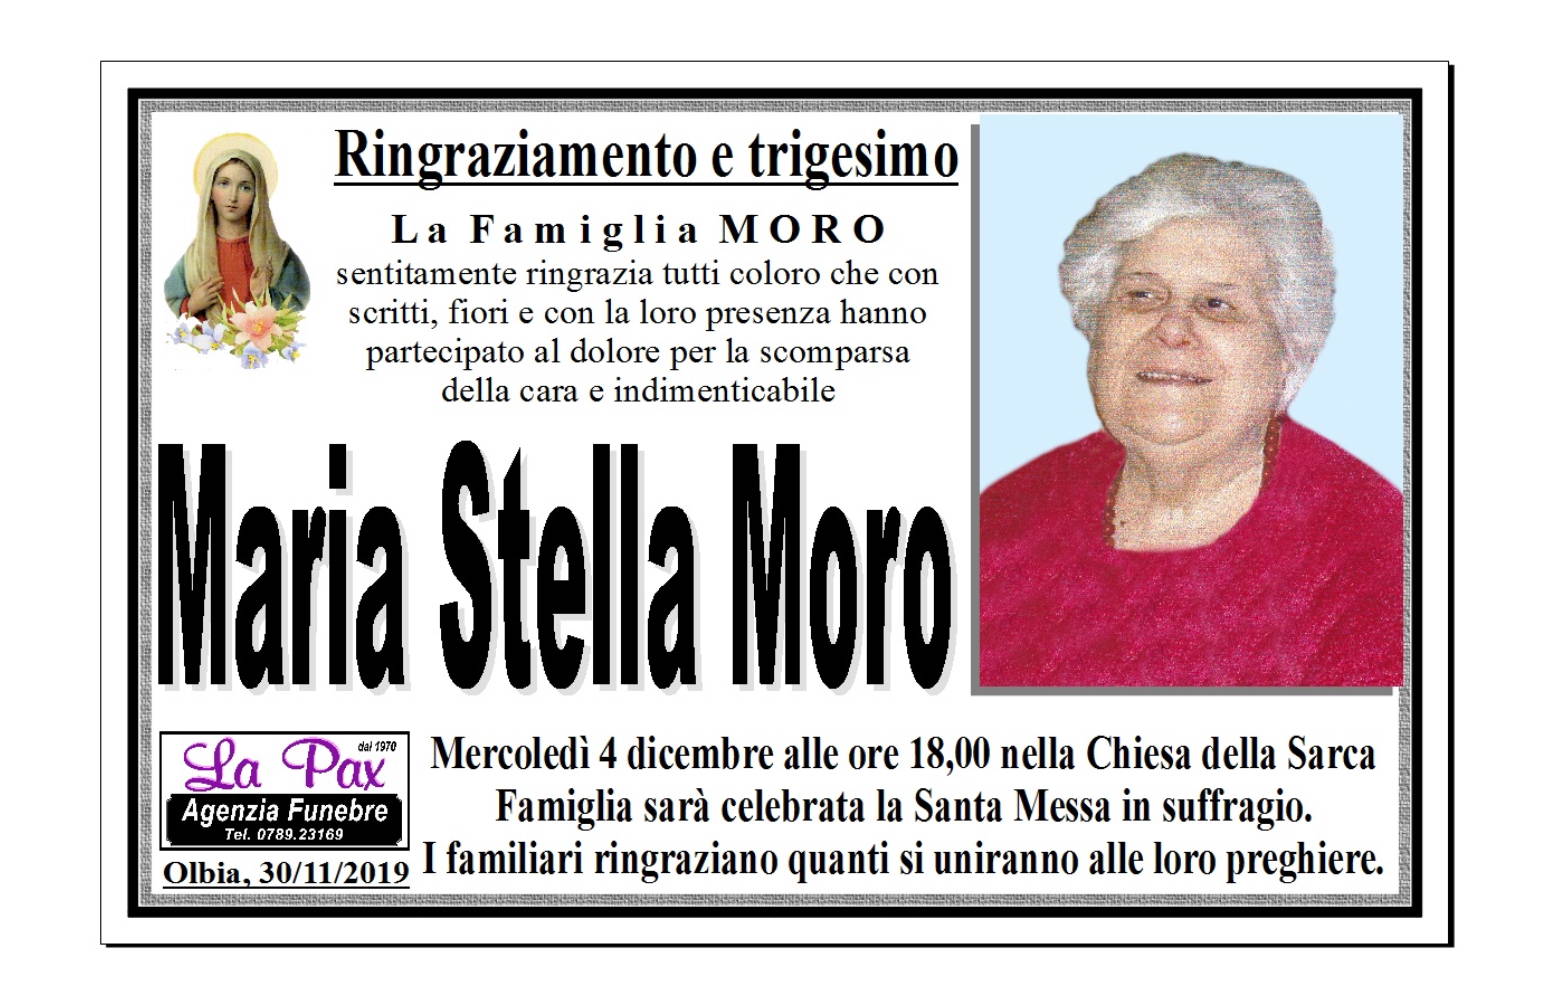 Maria Stella Moro